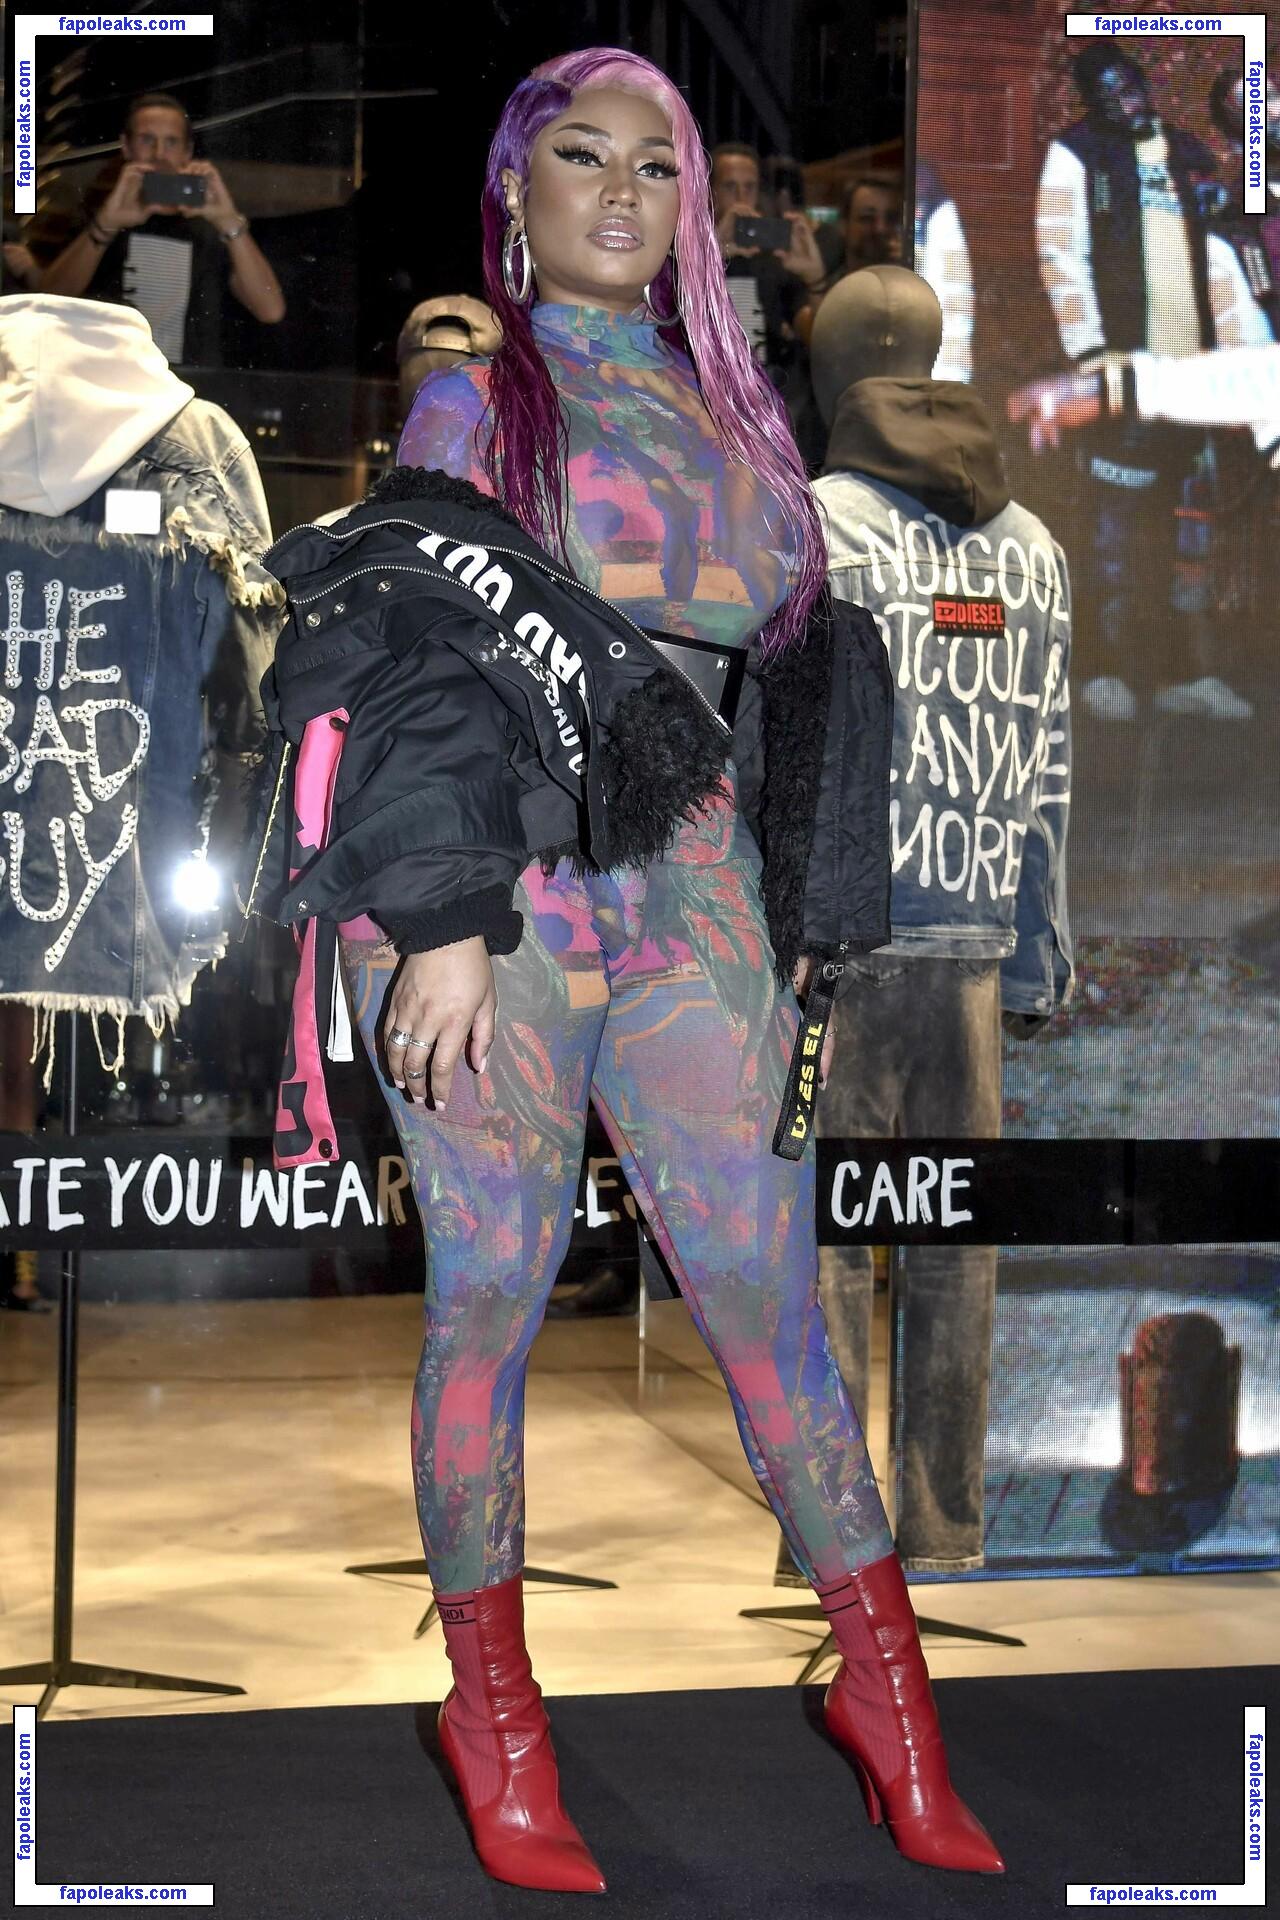 Nicki Minaj / nickiminaj nude photo #2104 from OnlyFans